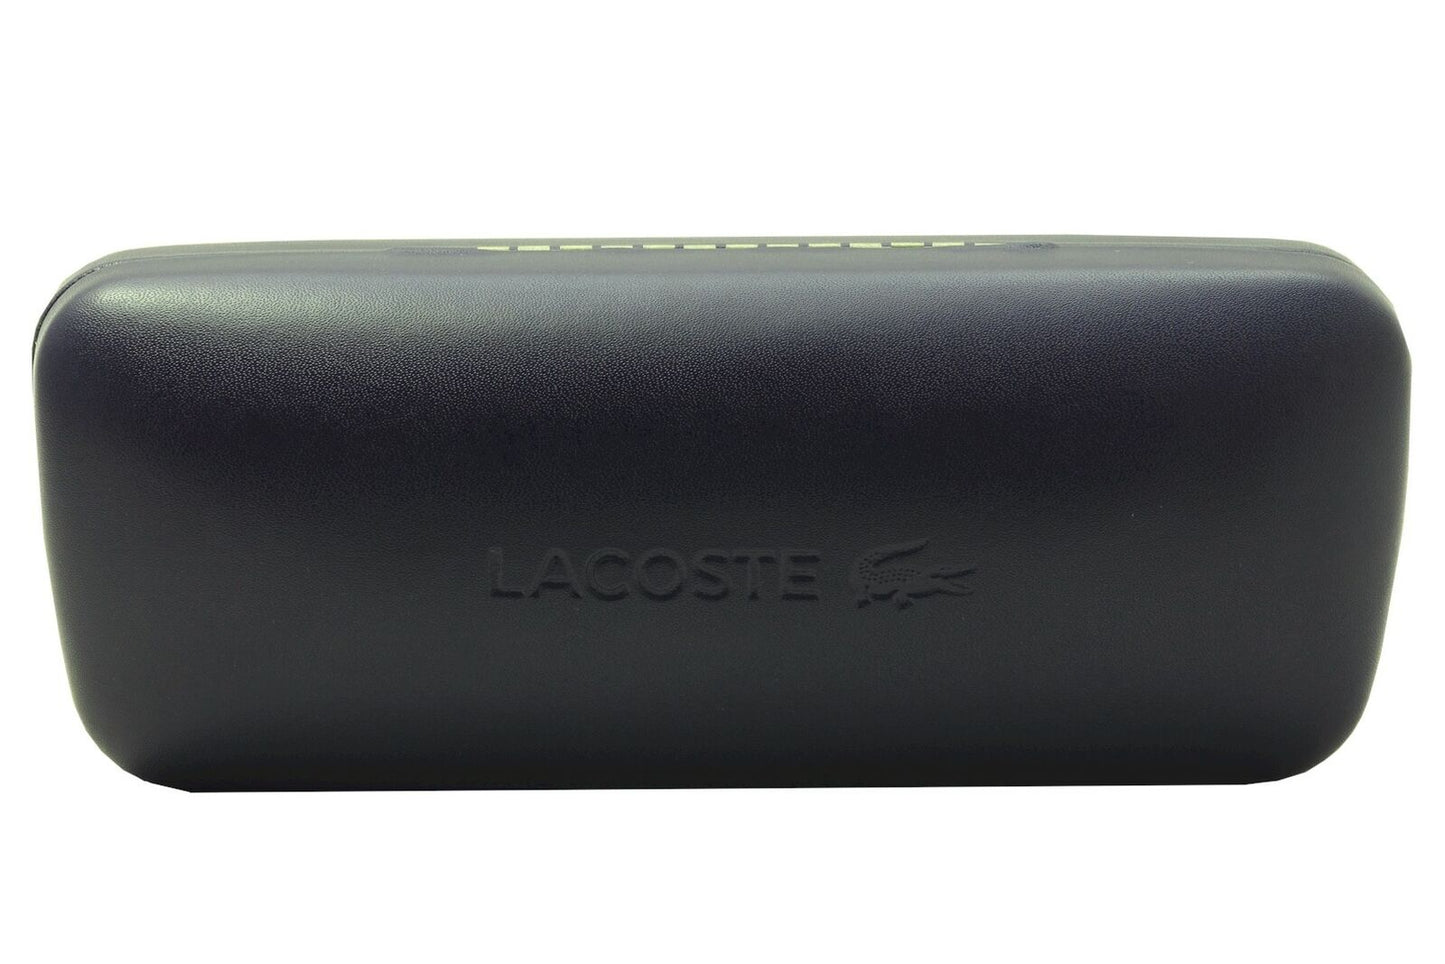 Lacoste L177S-033 57mm New Sunglasses